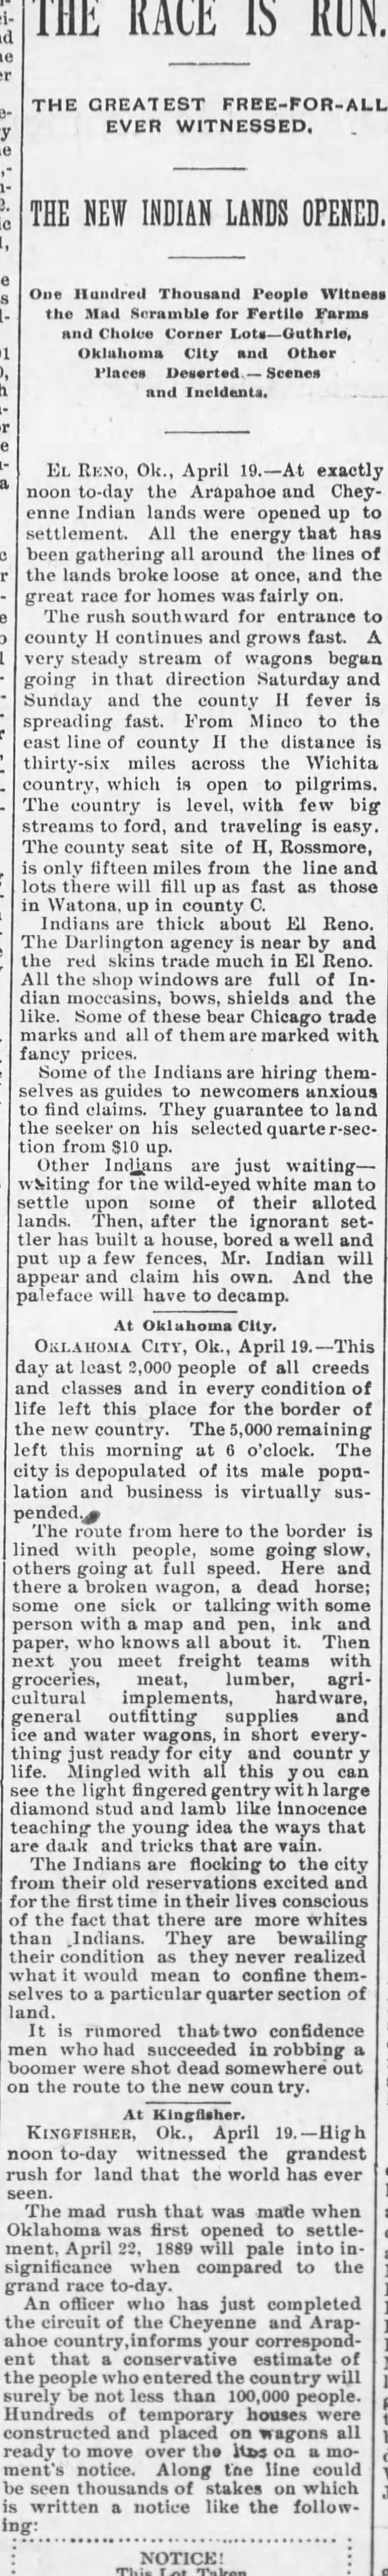 The Race is Run Oklahoma, 1892